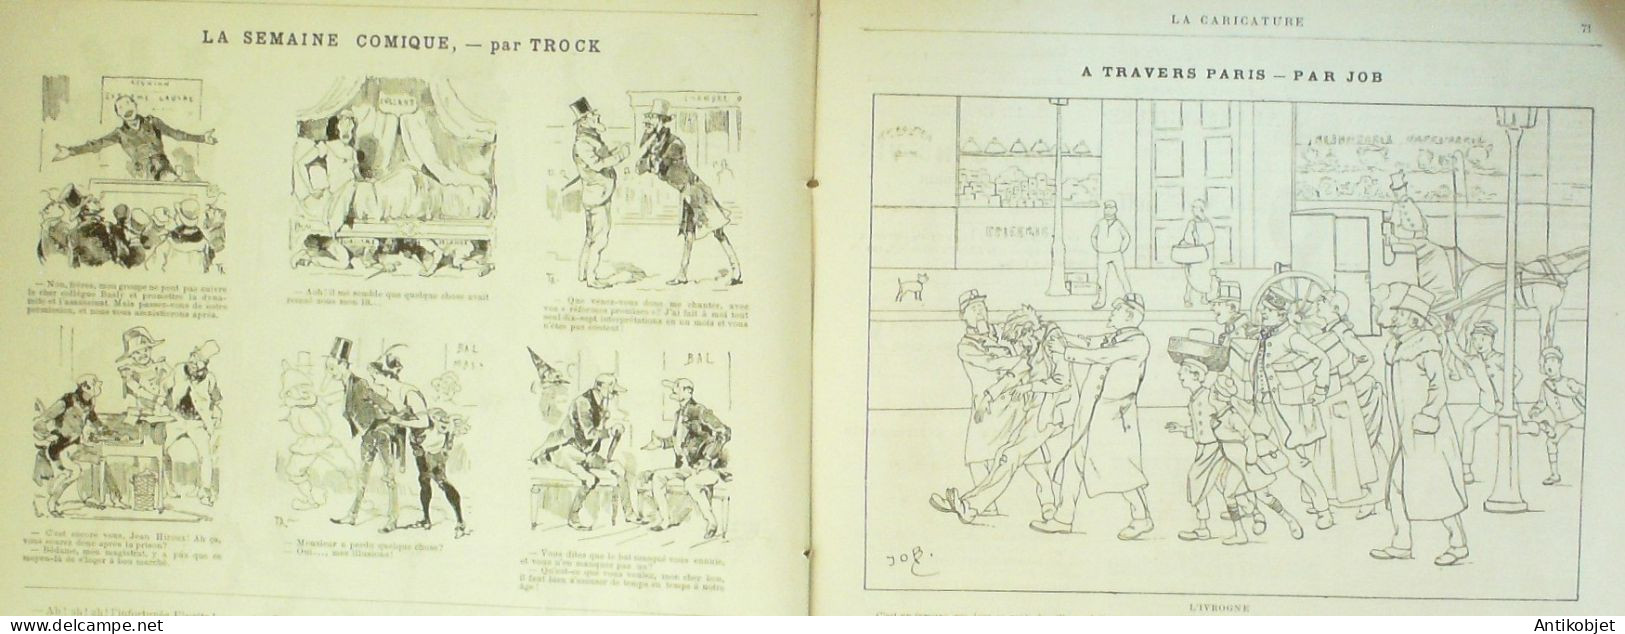 La Caricature 1886 N°322 Scolaires Draner Pintard Et Sa Cuicinière Caran D'Ache Bourget Par Luque Sorel - Magazines - Before 1900